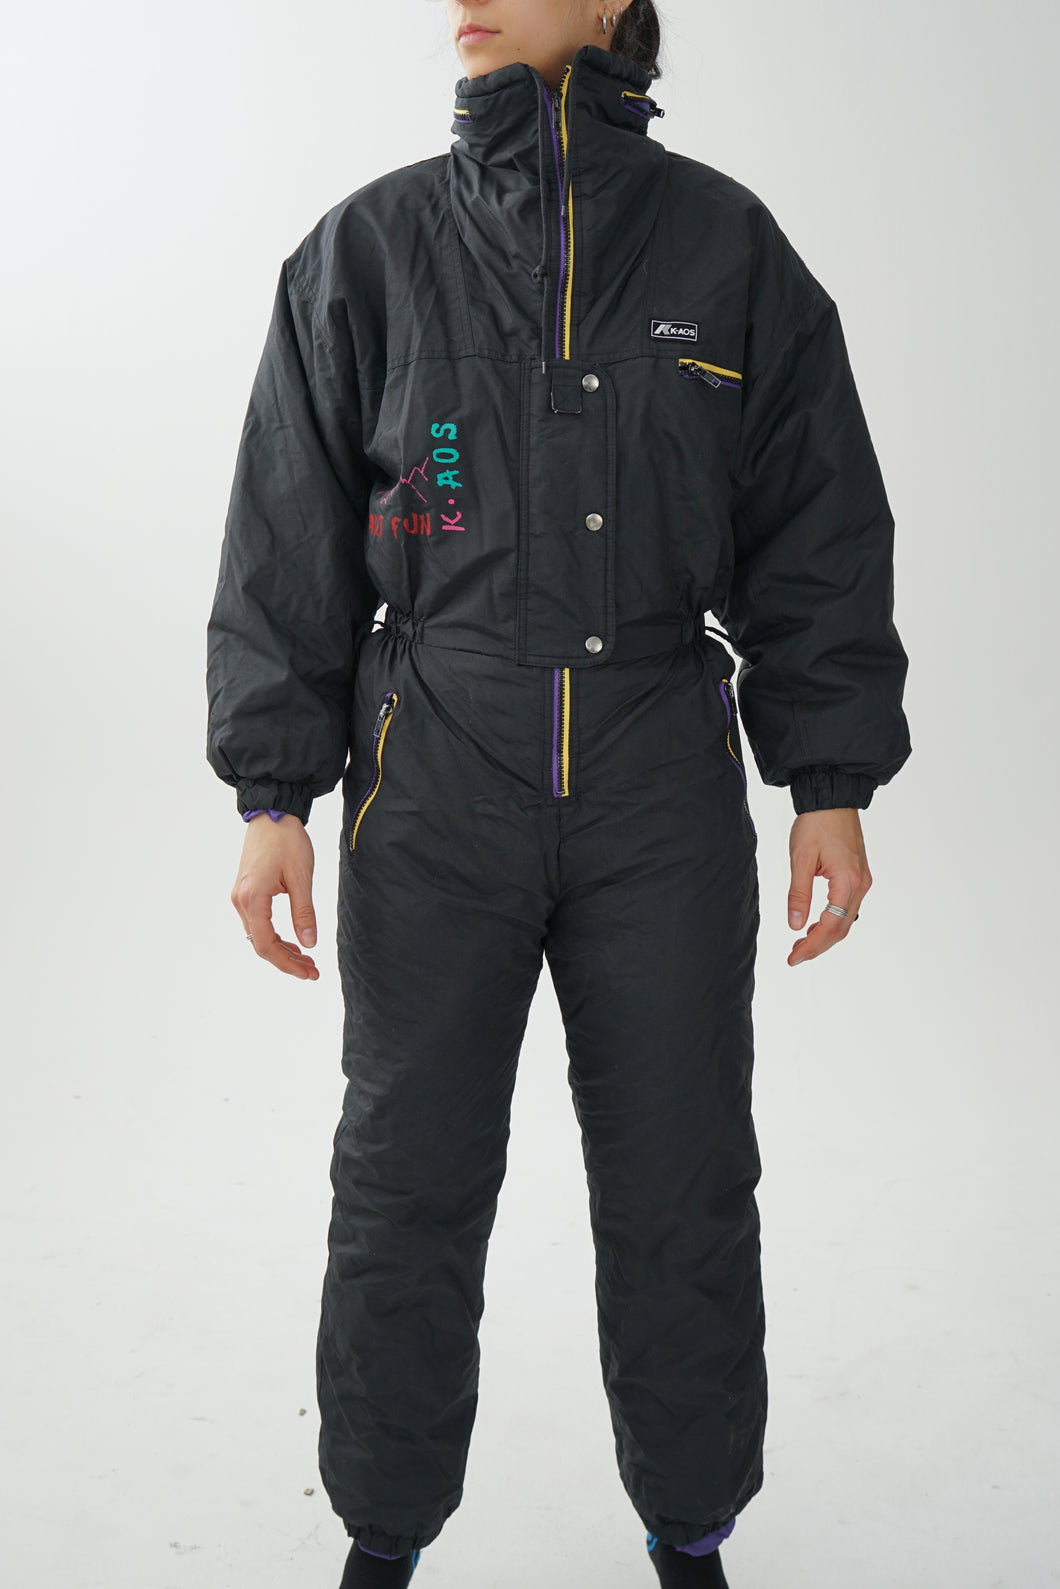 One piece vintage Kaos ski suit, snow suit noir avec mauve et jaune unisex taille 7-8 (XS-S)